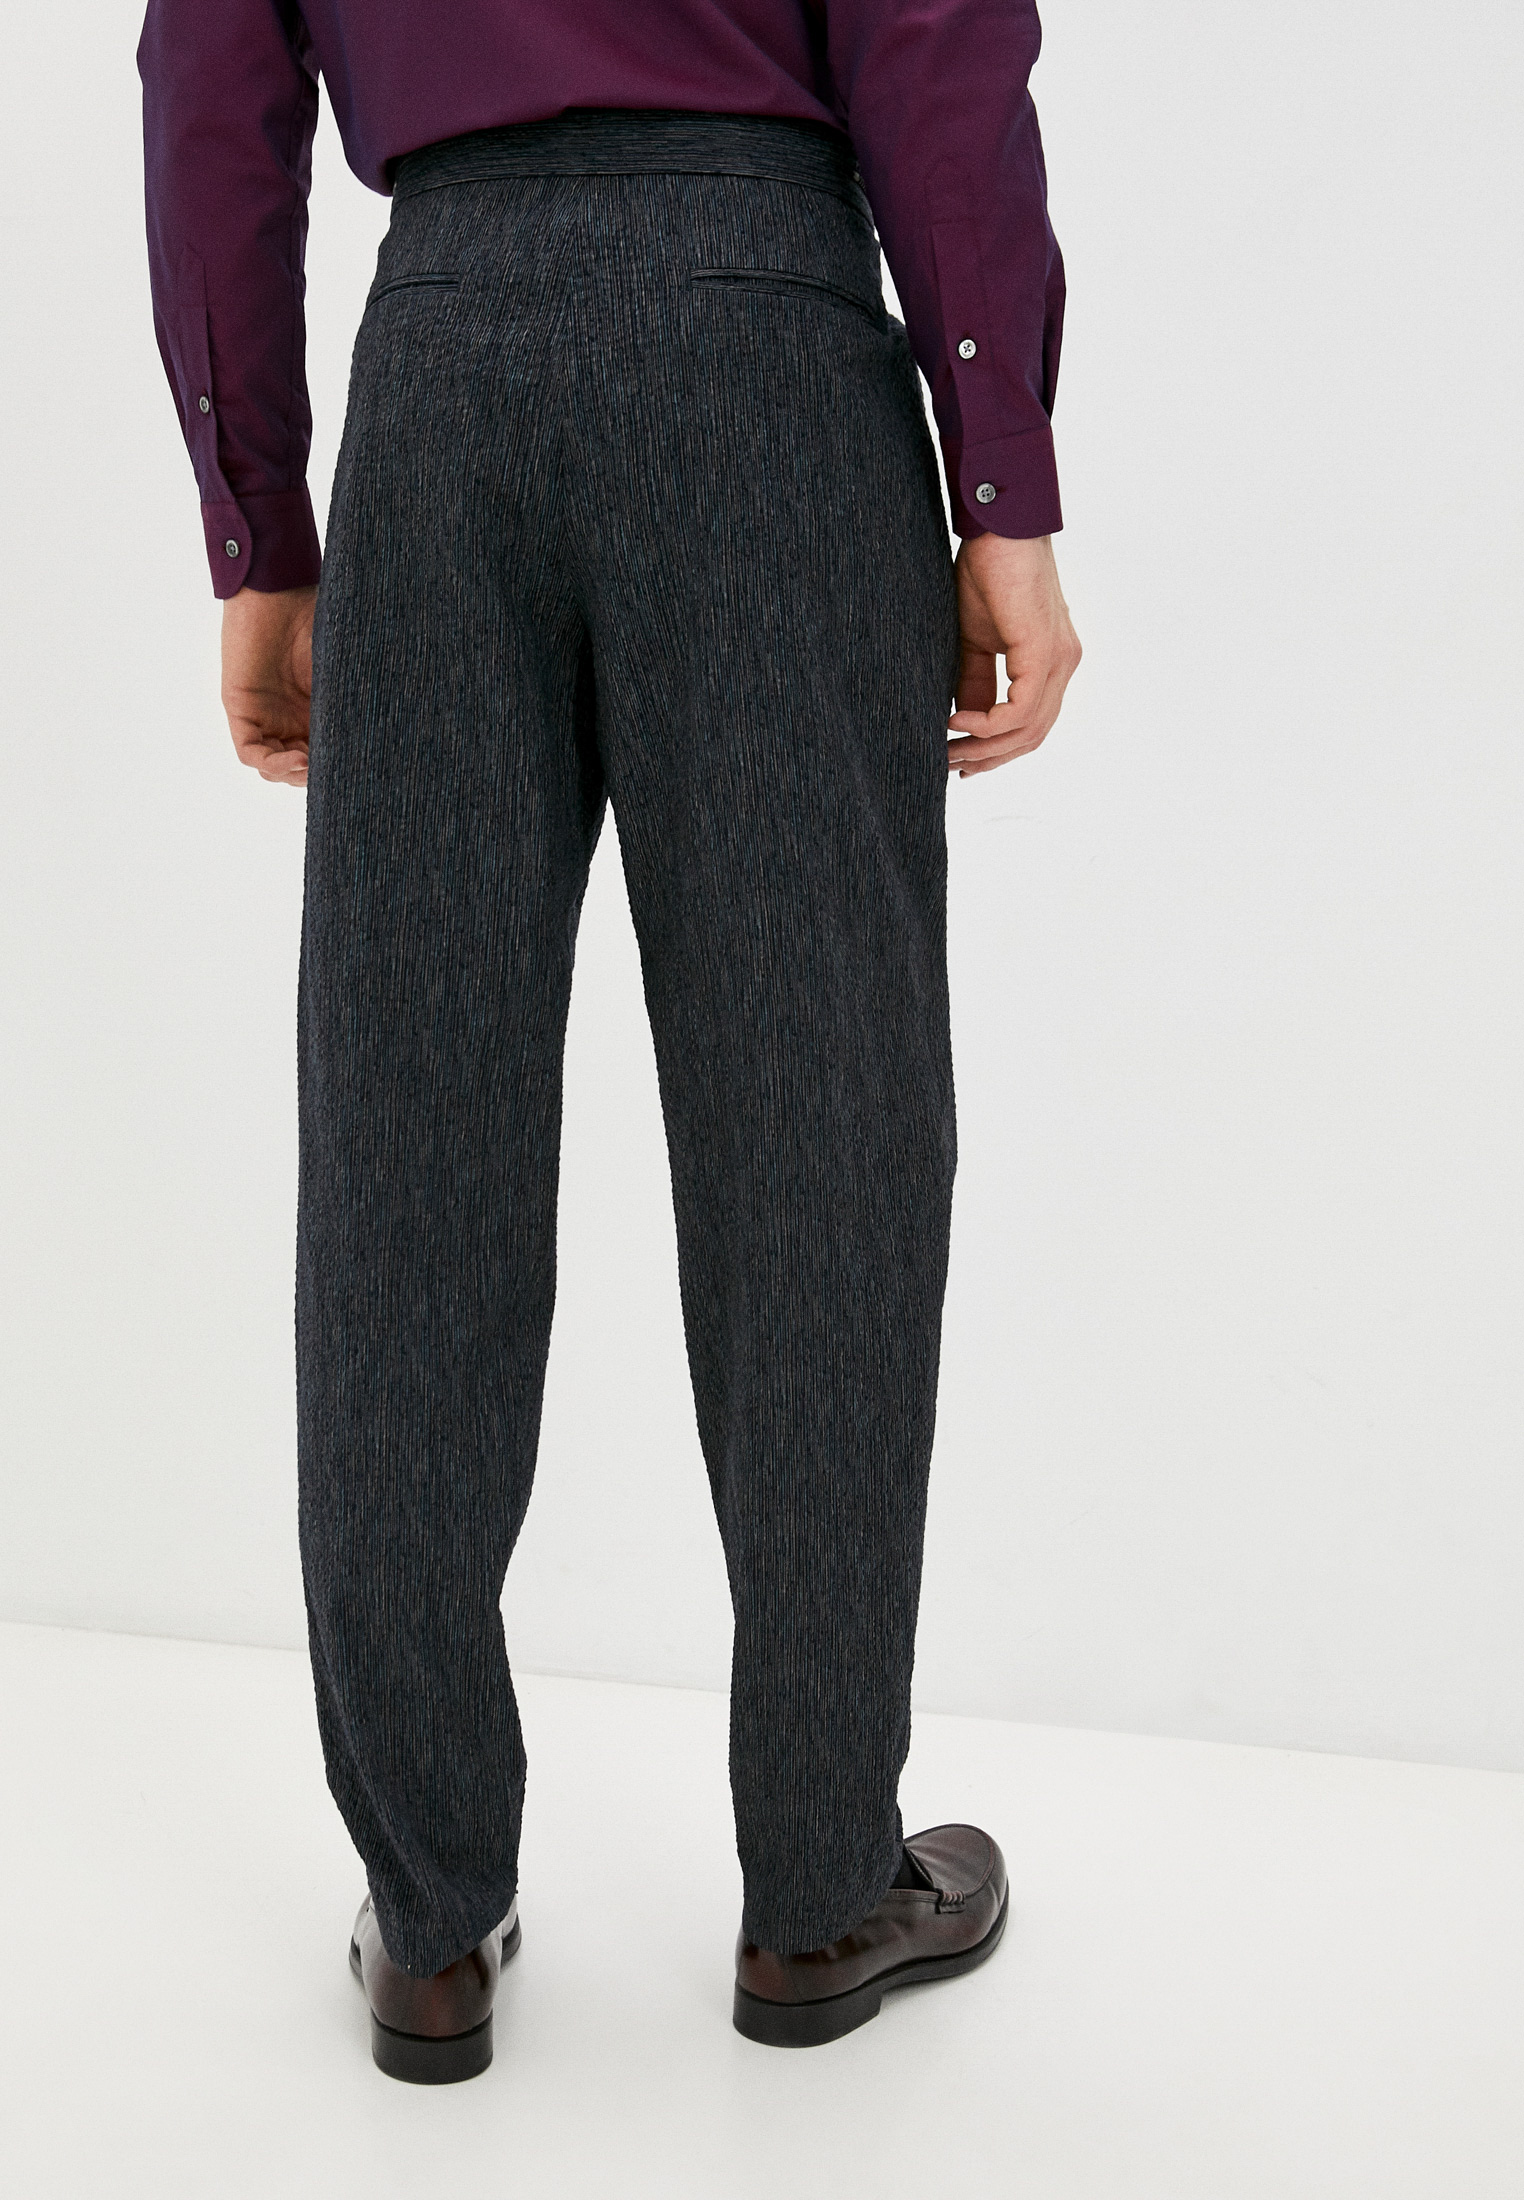 Мужские повседневные брюки Emporio Armani (Эмпорио Армани) W1P290 W1250: изображение 4